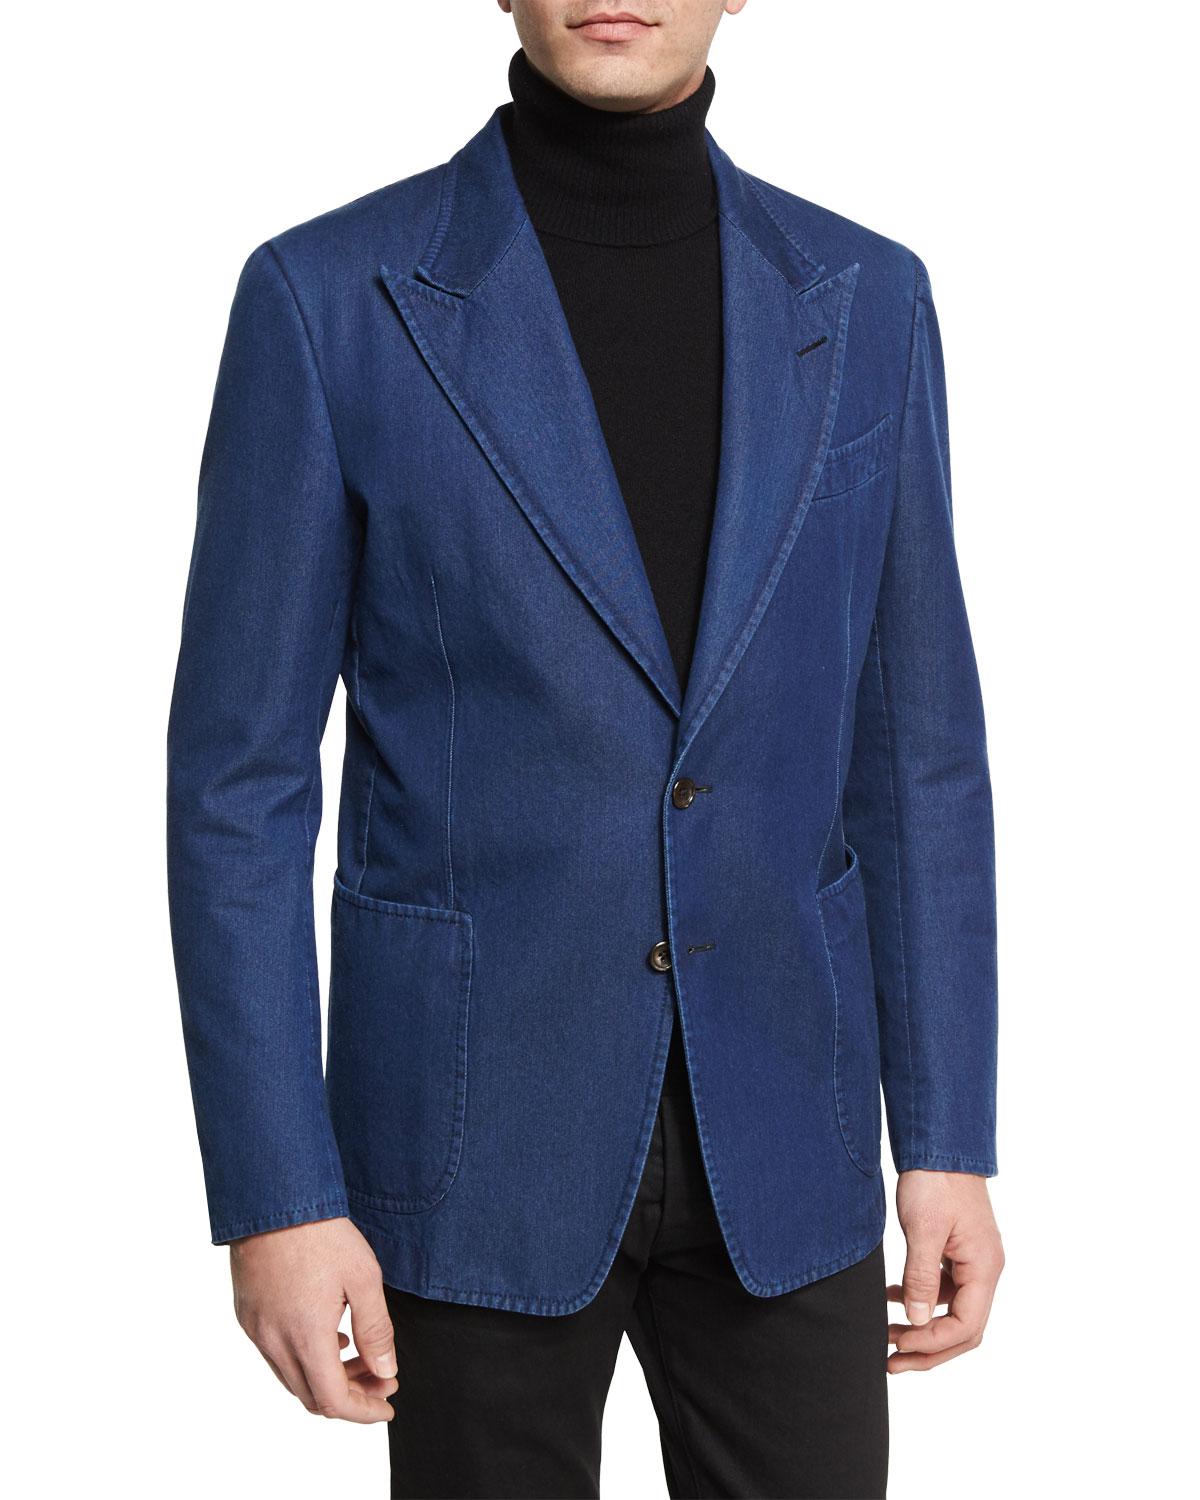 Lyst - Tom Ford Washed Denim Peak-lapel Sport Jacket in Blue for Men